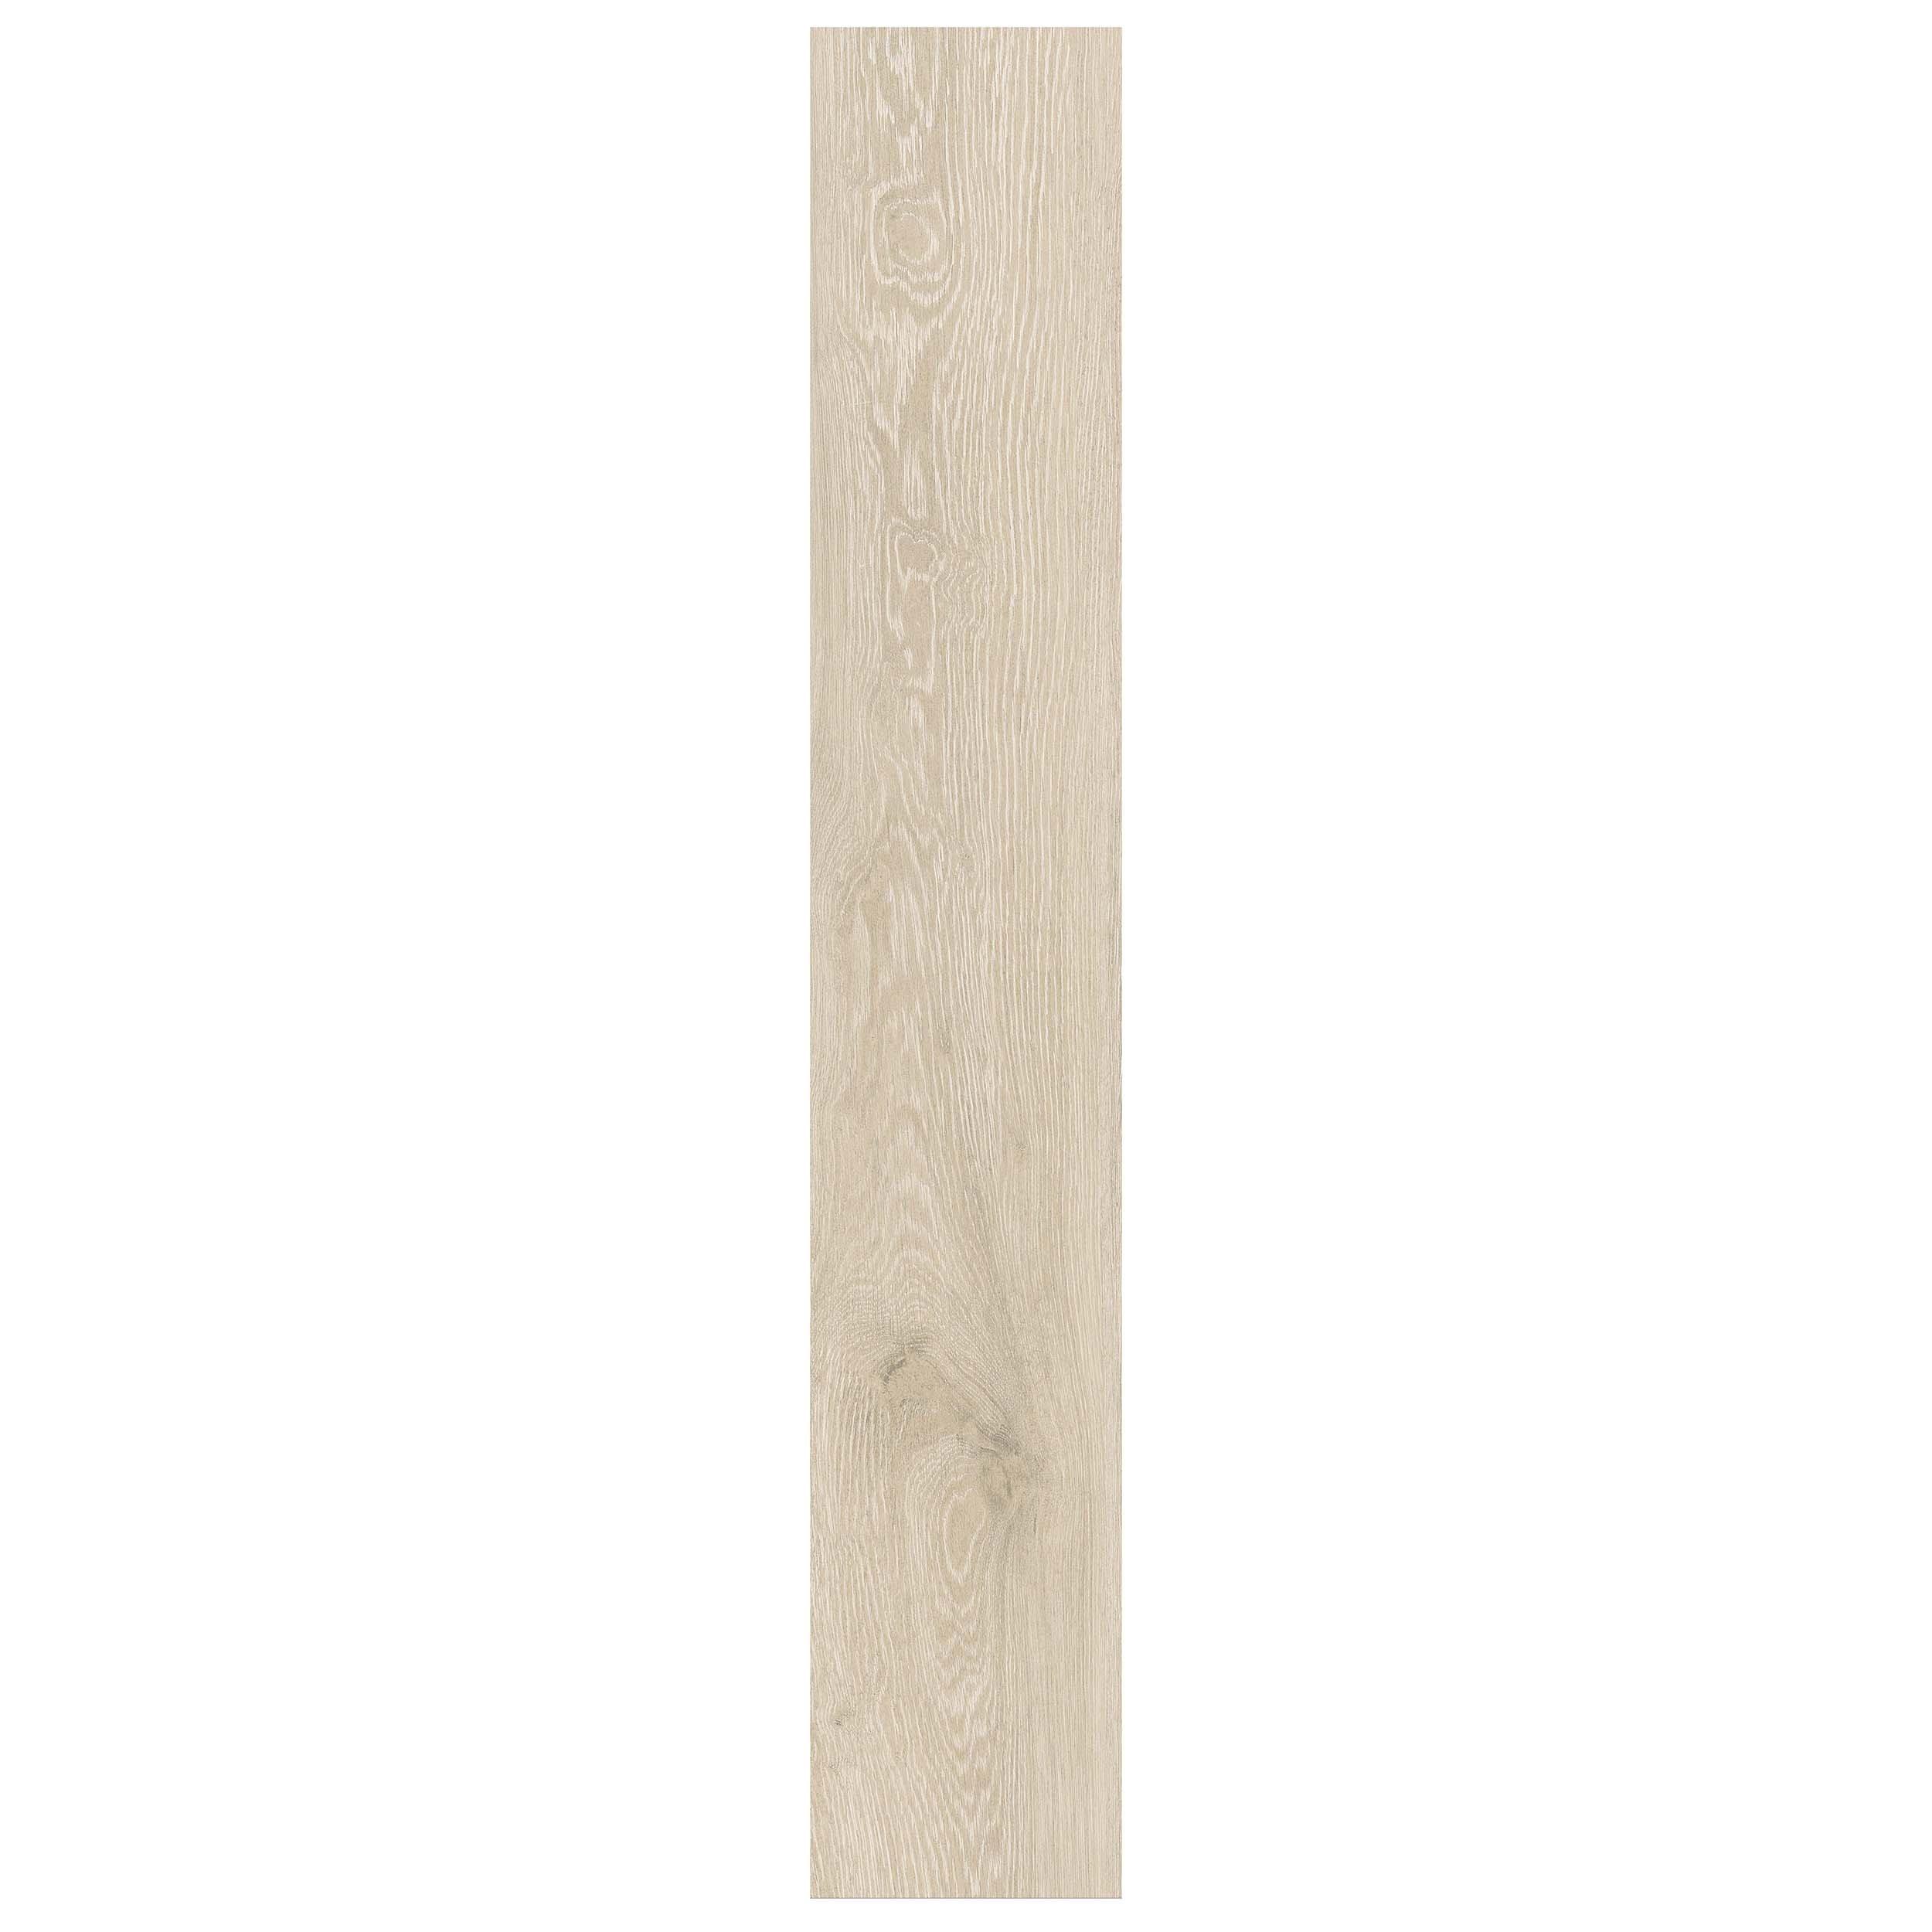 Honey Blonde Oak Wood Plank Porcelain Tile